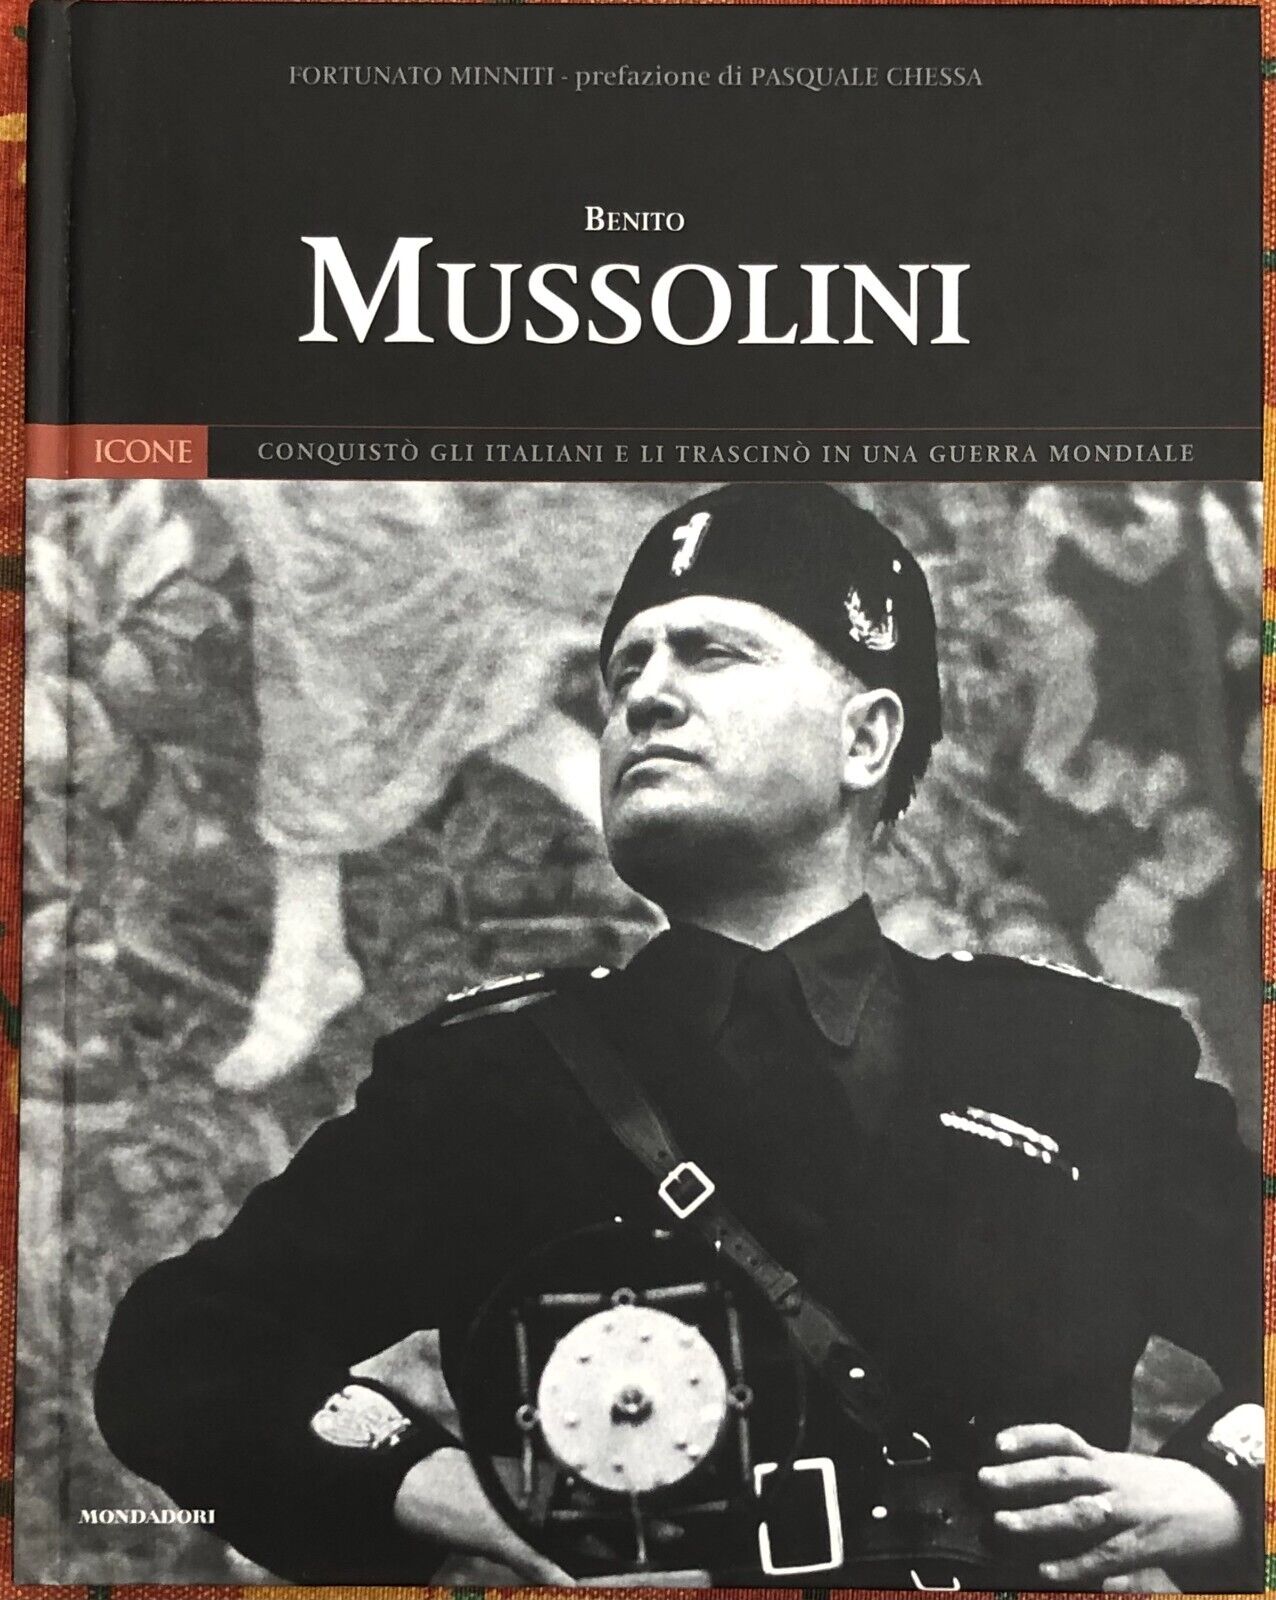 Icone del XX secolo Panorama n. 2 - Benito Mussolini di Fortunato Minniti, 200